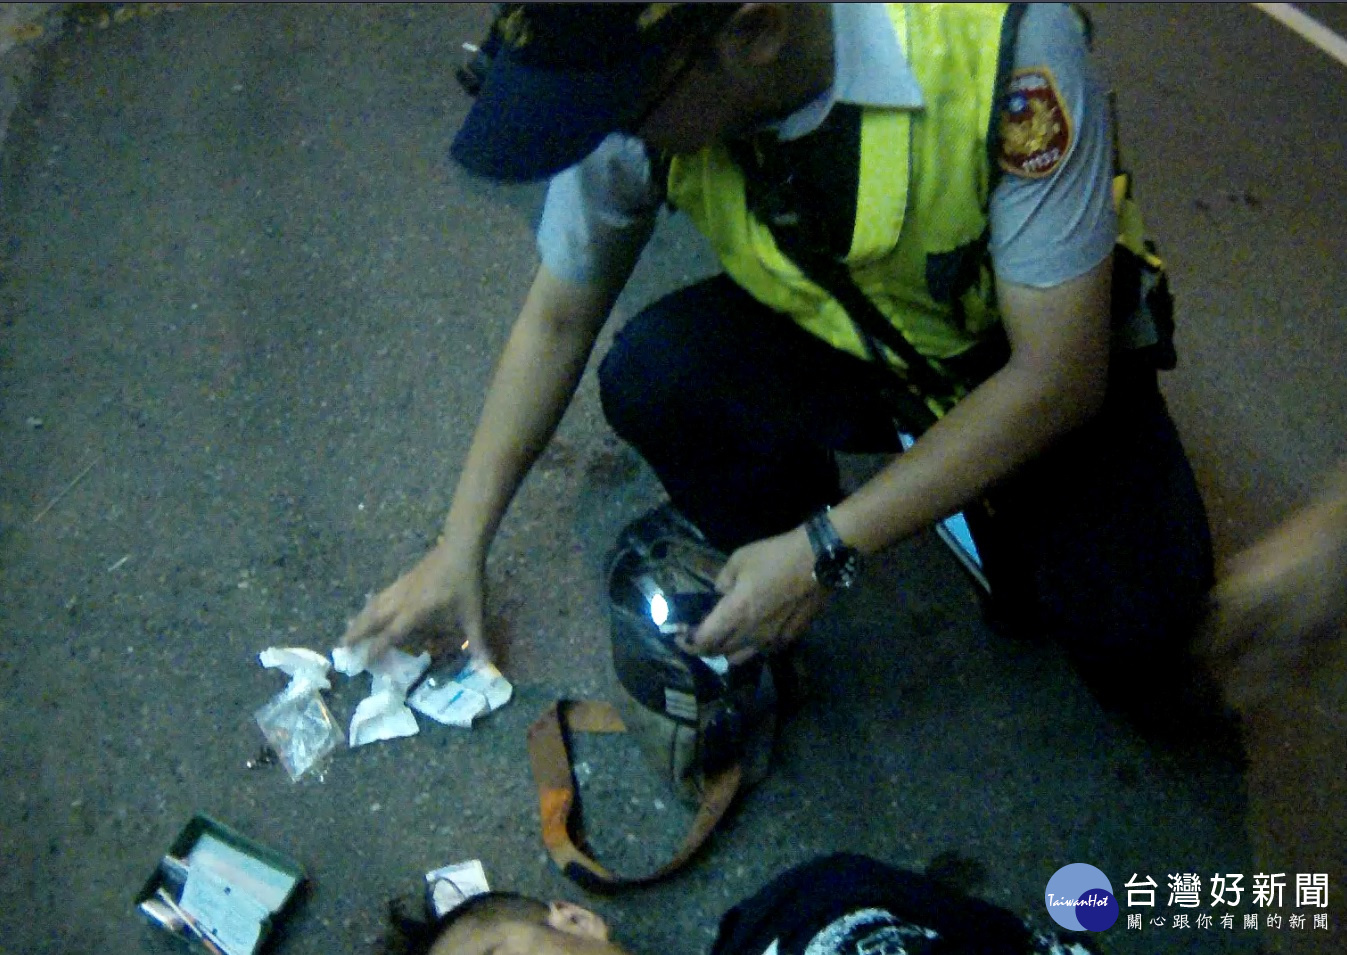 警方當場查獲一級毒品海洛英（重量0.25公克）及注射針筒2支等犯罪證據。